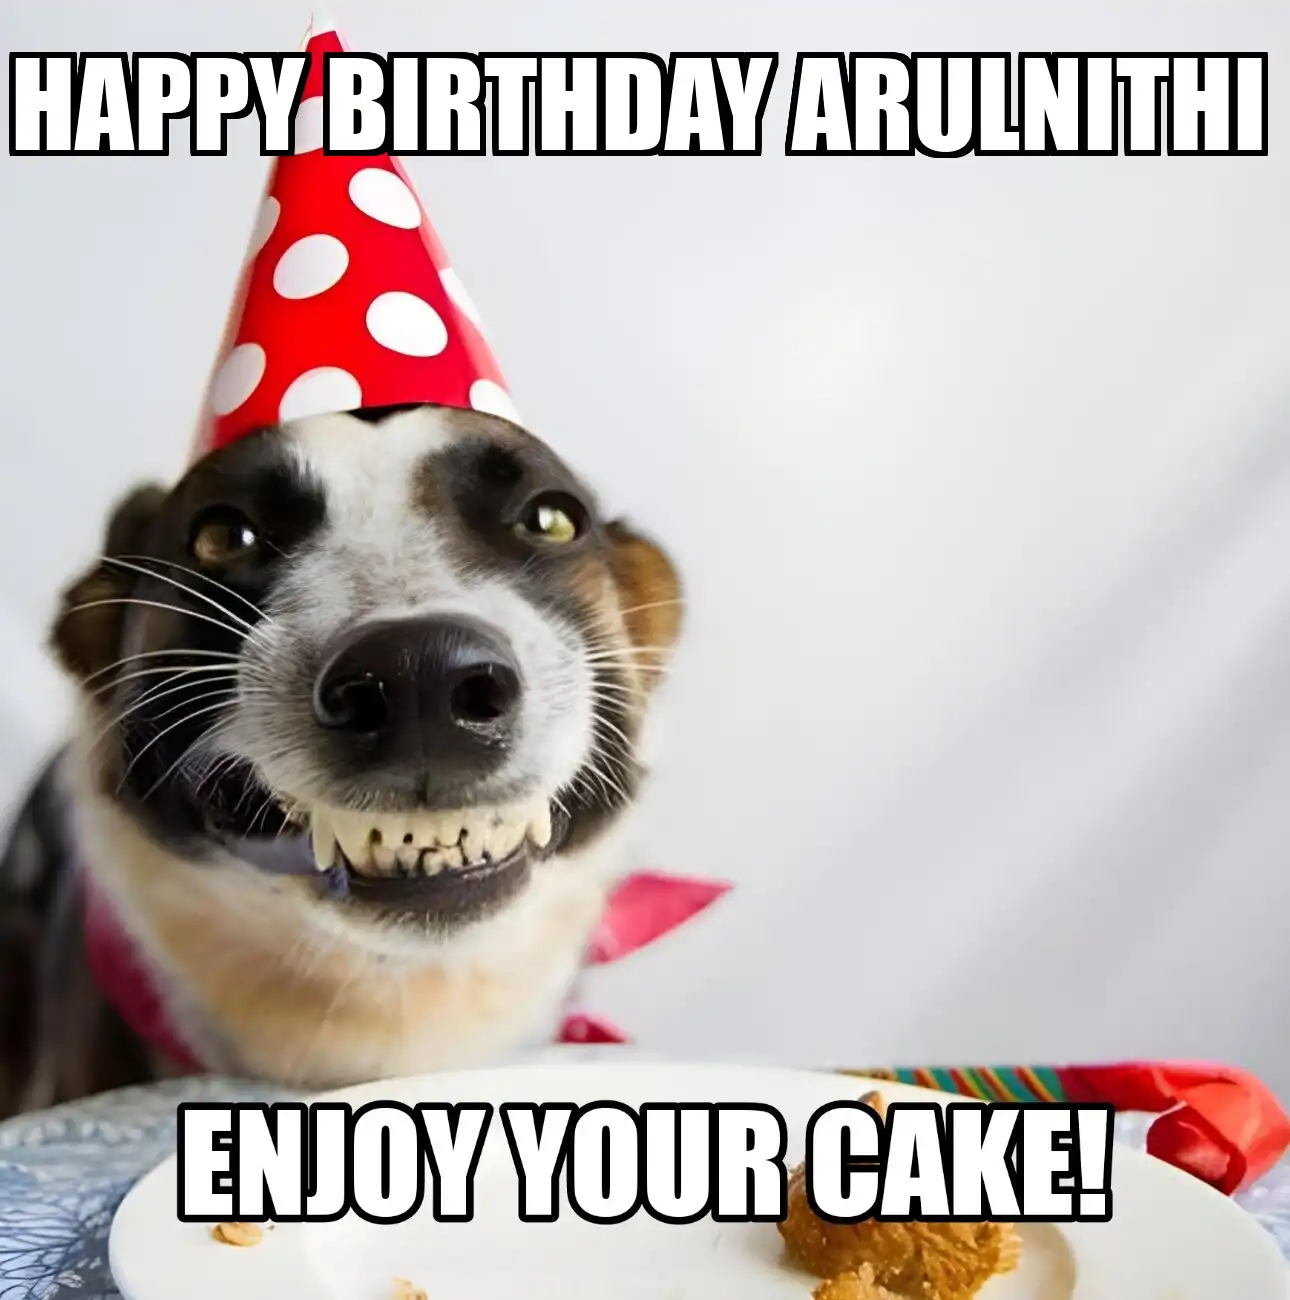 Happy Birthday Arulnithi Enjoy Your Cake Dog Meme